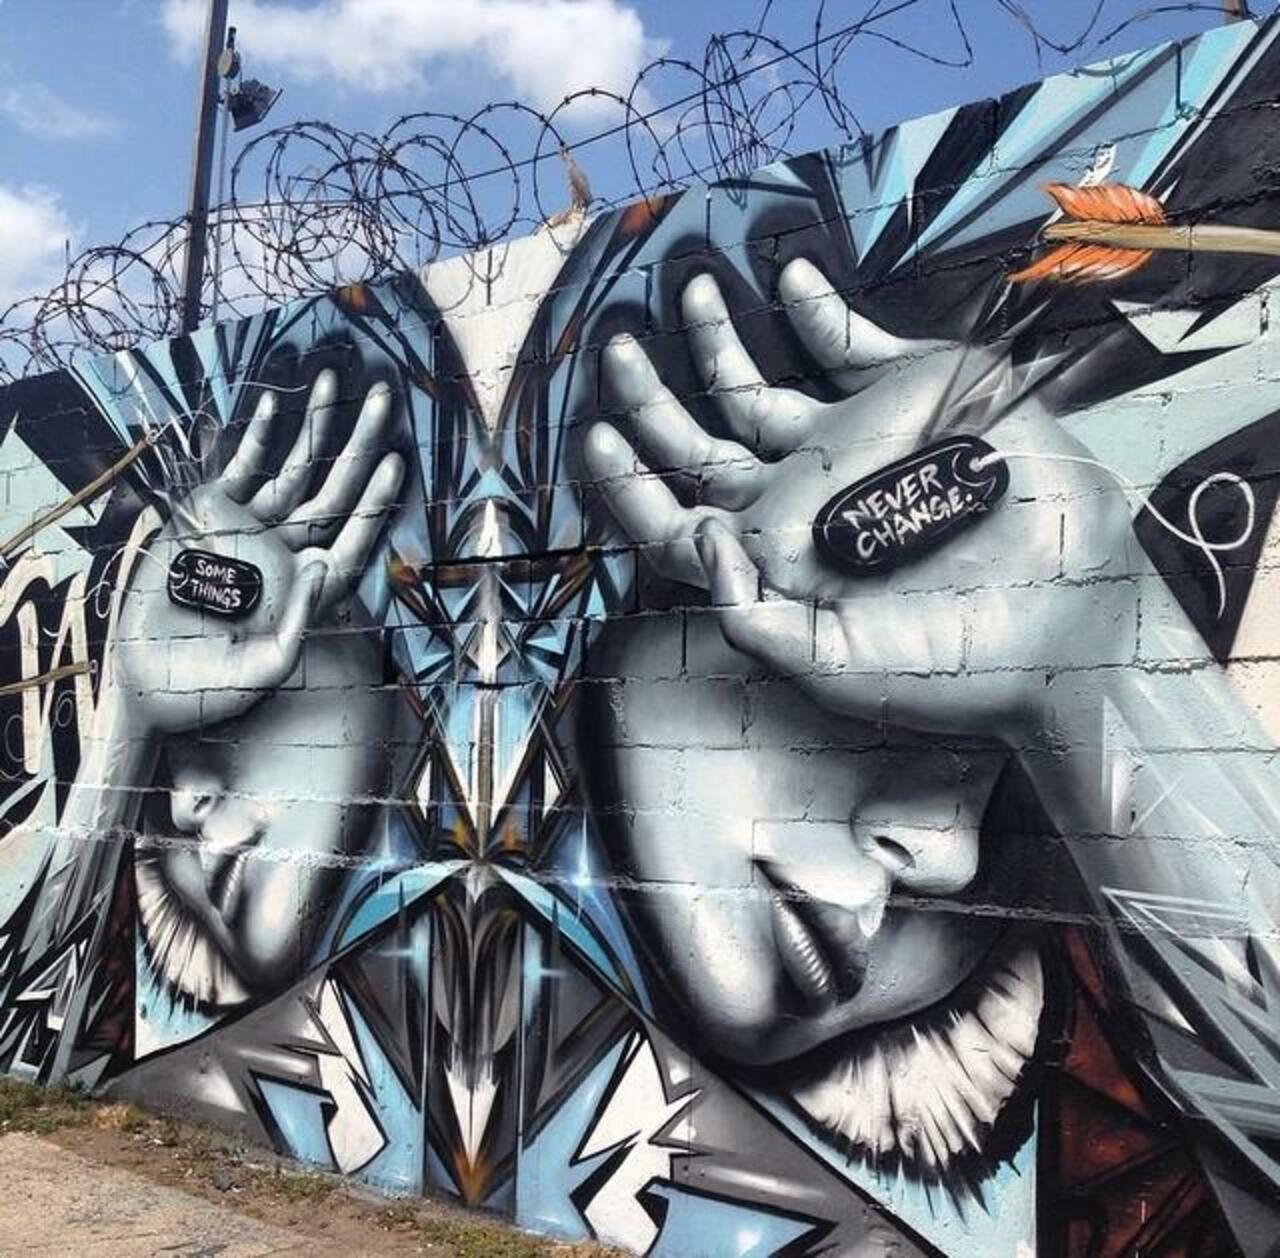 Artist @StarFighterA new Street Art mural titled 'Some Things Never Change' #art #mural #graffiti #streetart https://t.co/v7Wqyon06I